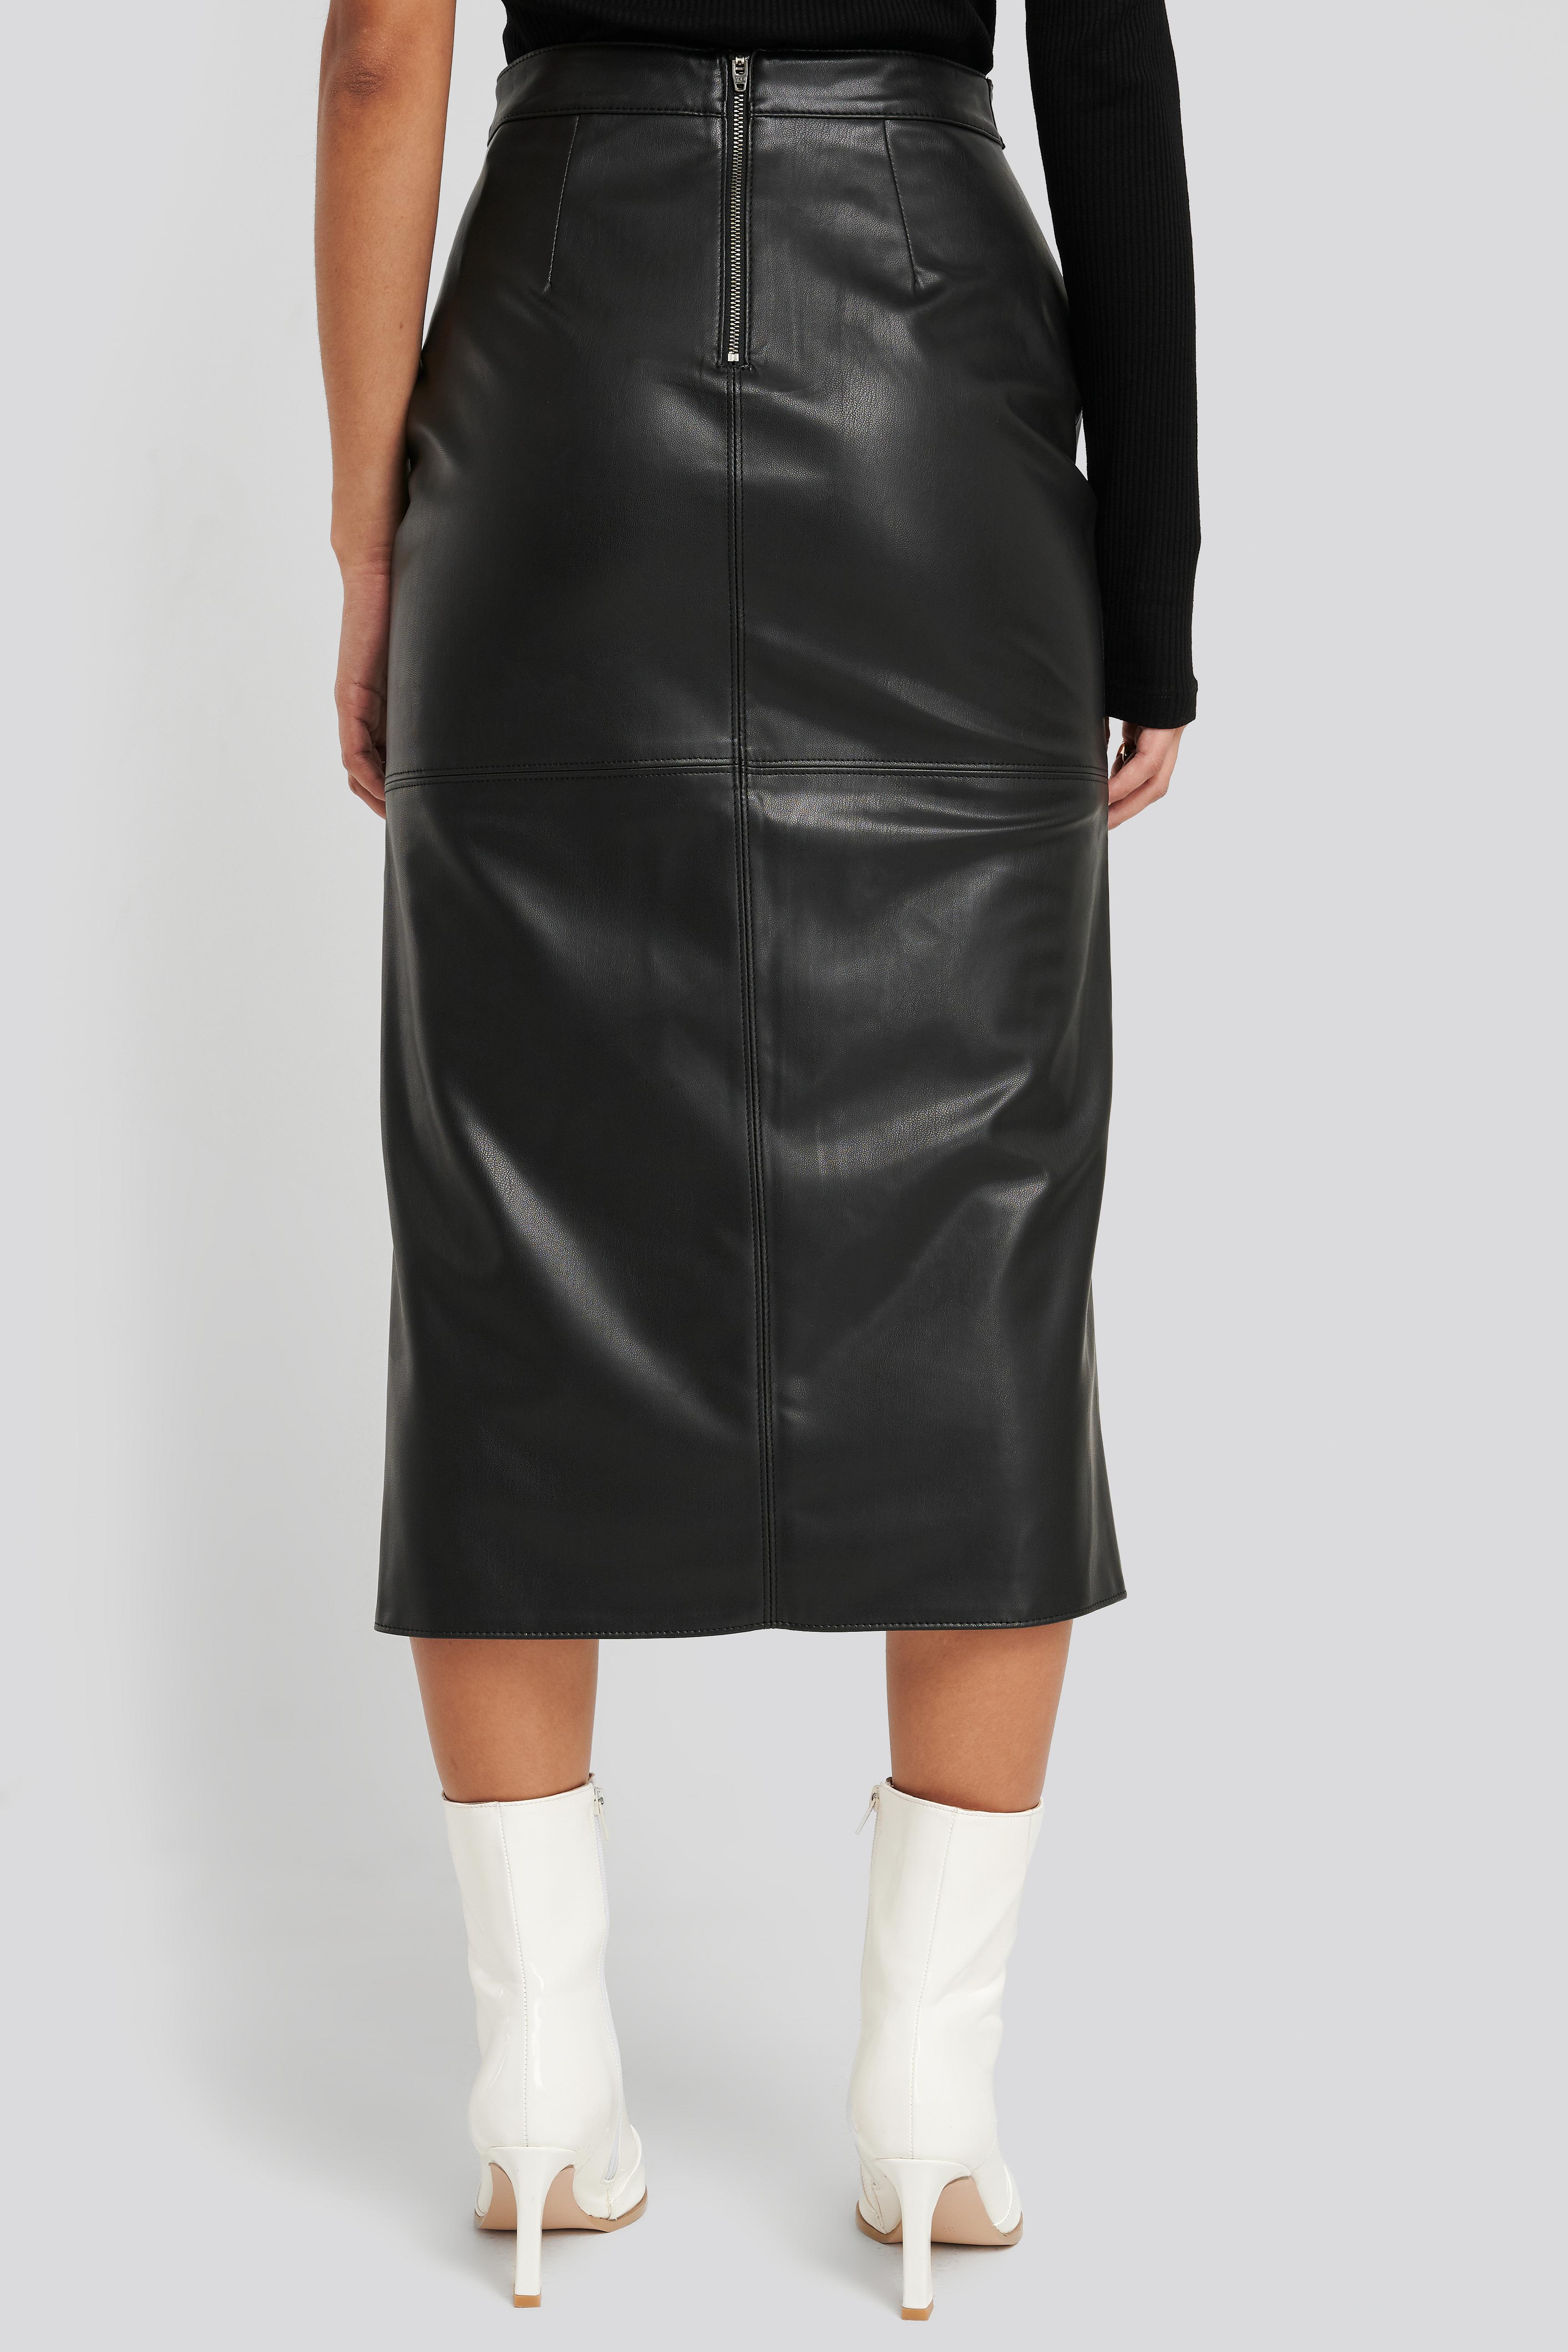 NA-KD Black Faux Leather Side Slit Skirt - Lyst